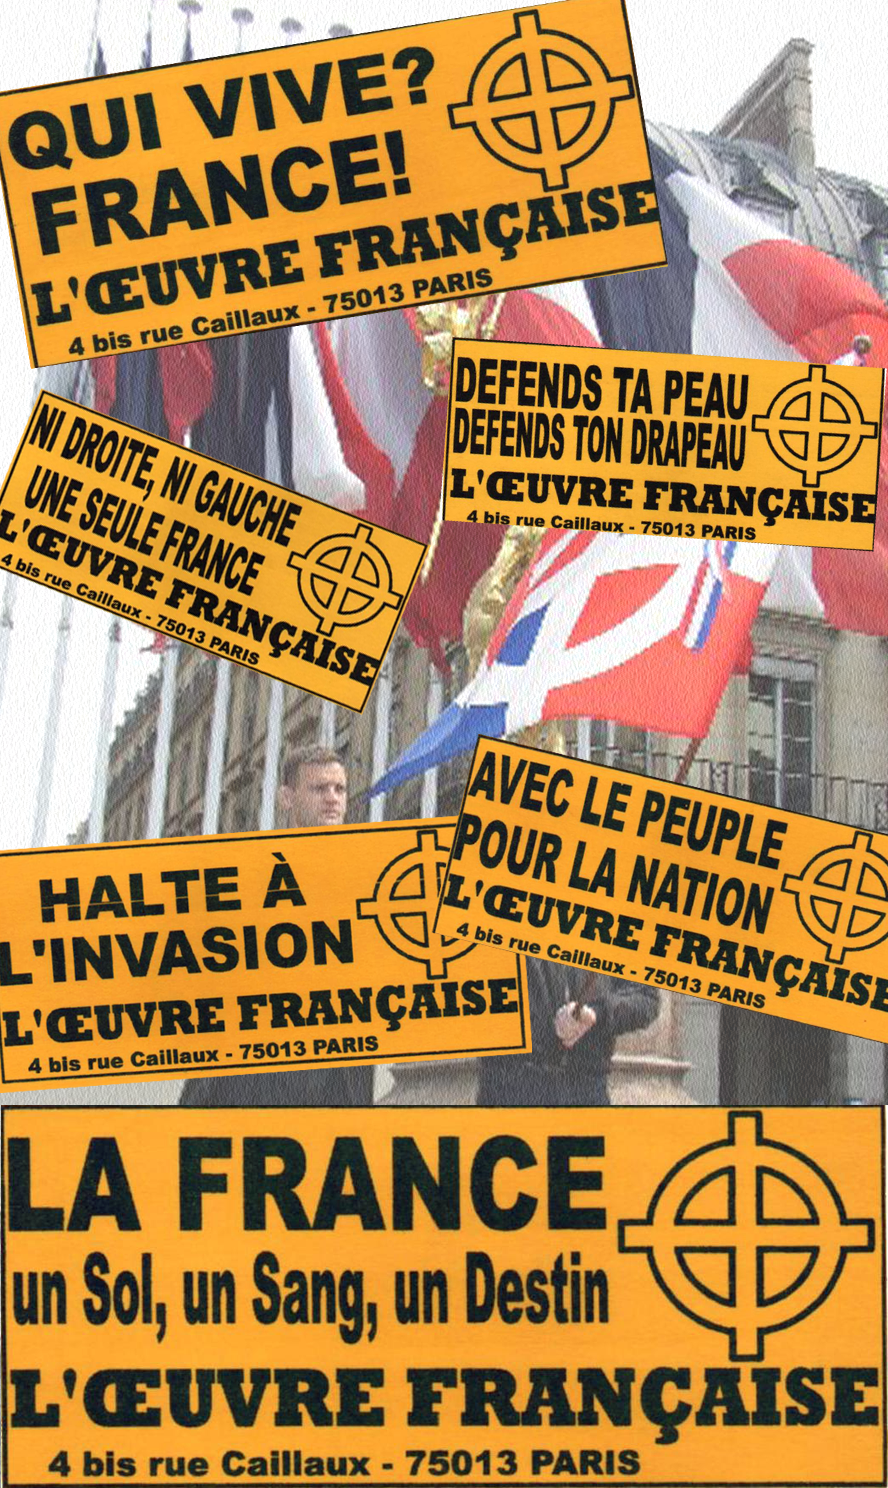 Halte à l'invasion - Défend ta peau, défend ton drapeau - Avec le peuple pour la nation - La France un sol un sang un destin - Ni droite ni gauche, une seule France - Qui vive France ! Autocollants de l'Œuvre française diffusés lors de campagne dans les années 1990